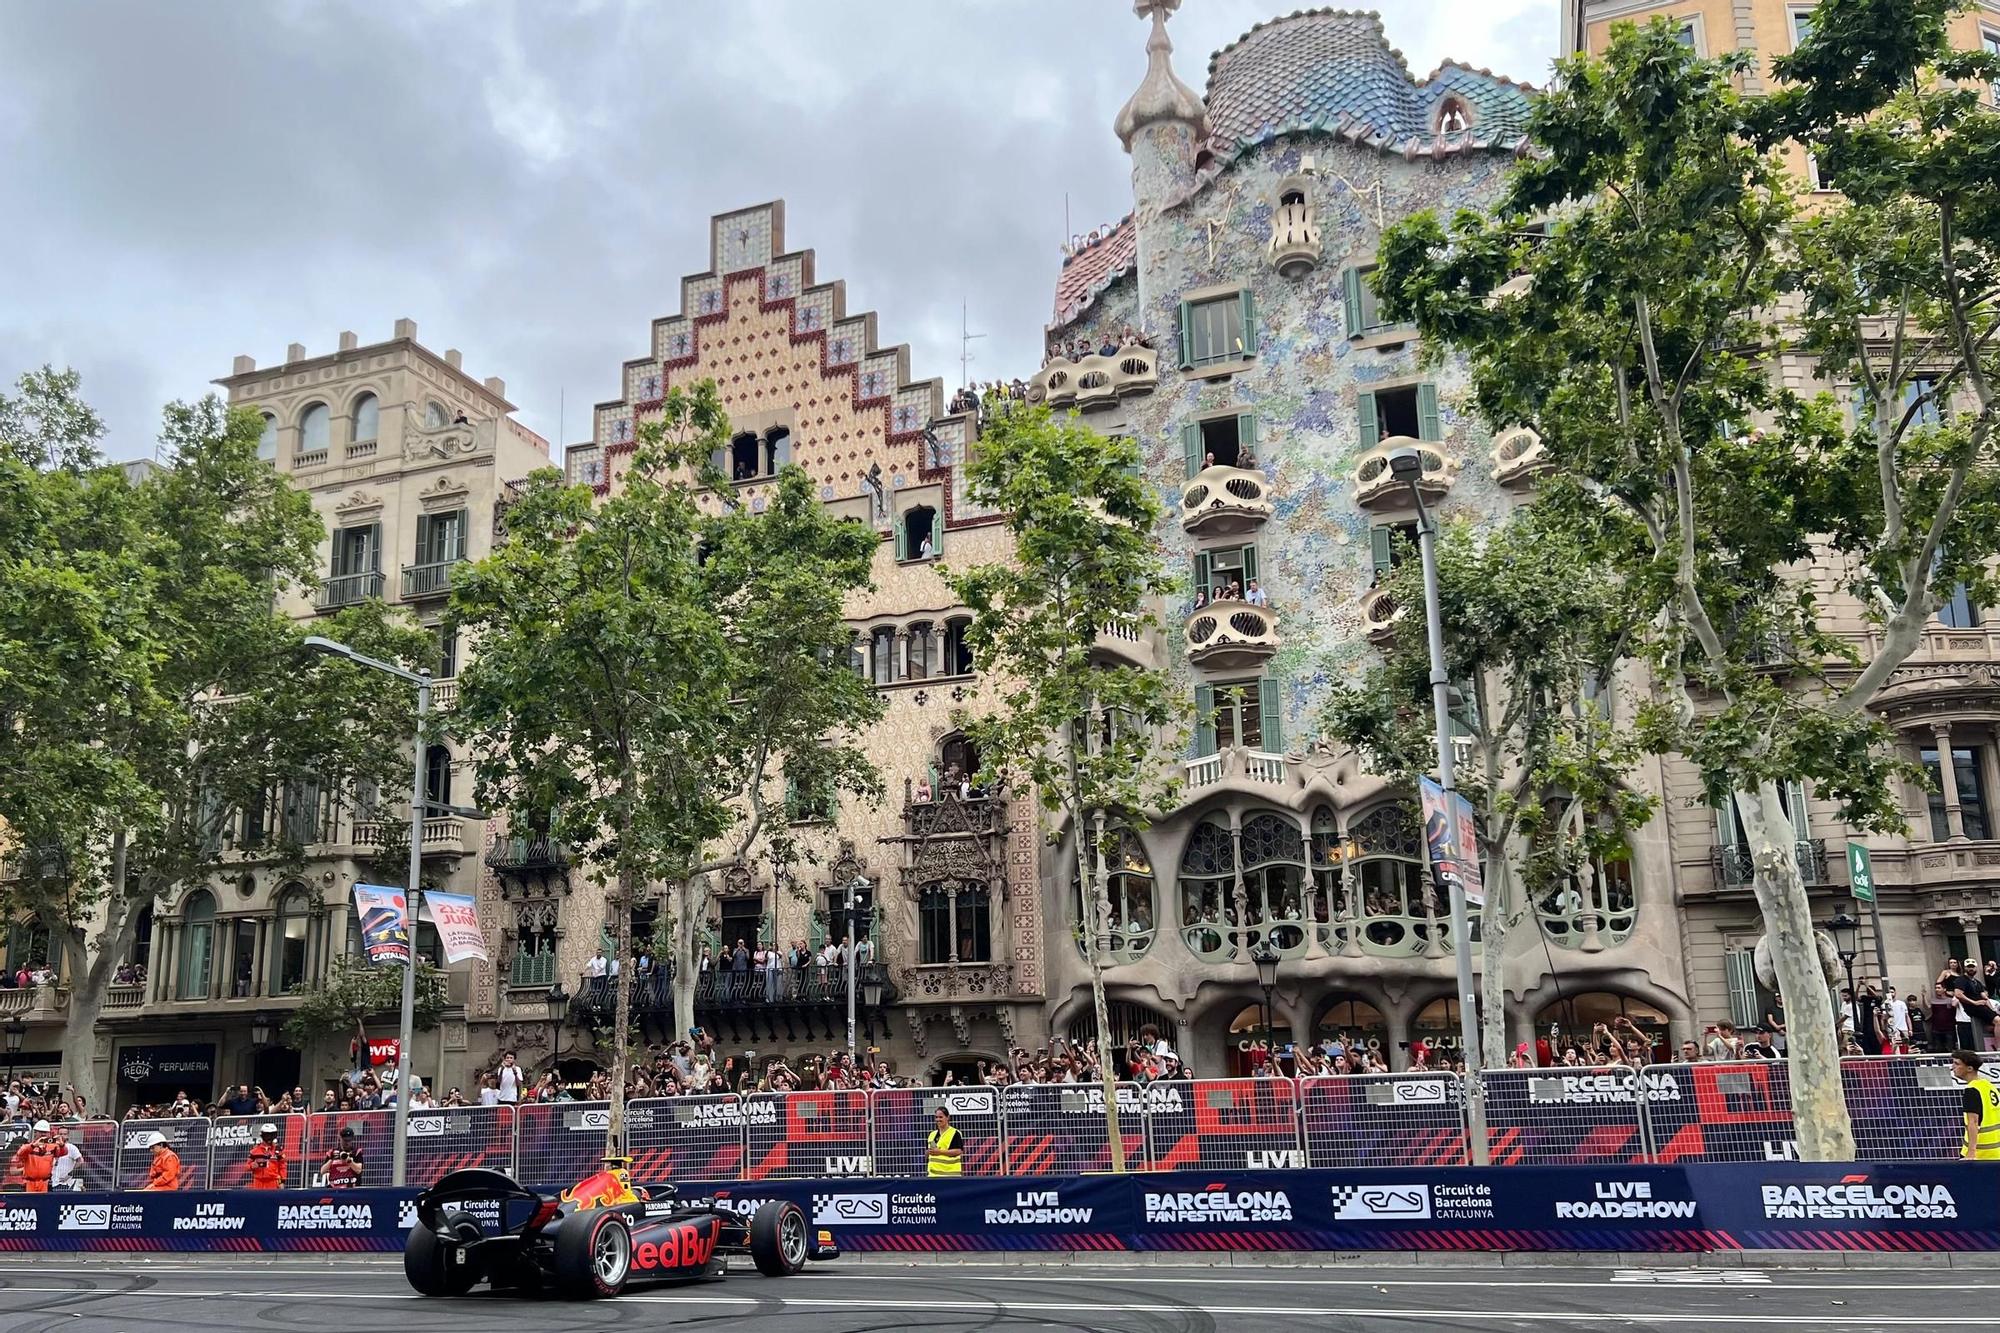 L'exhibició de Fórmula 1 pels carrers de Barcelona, en imatges